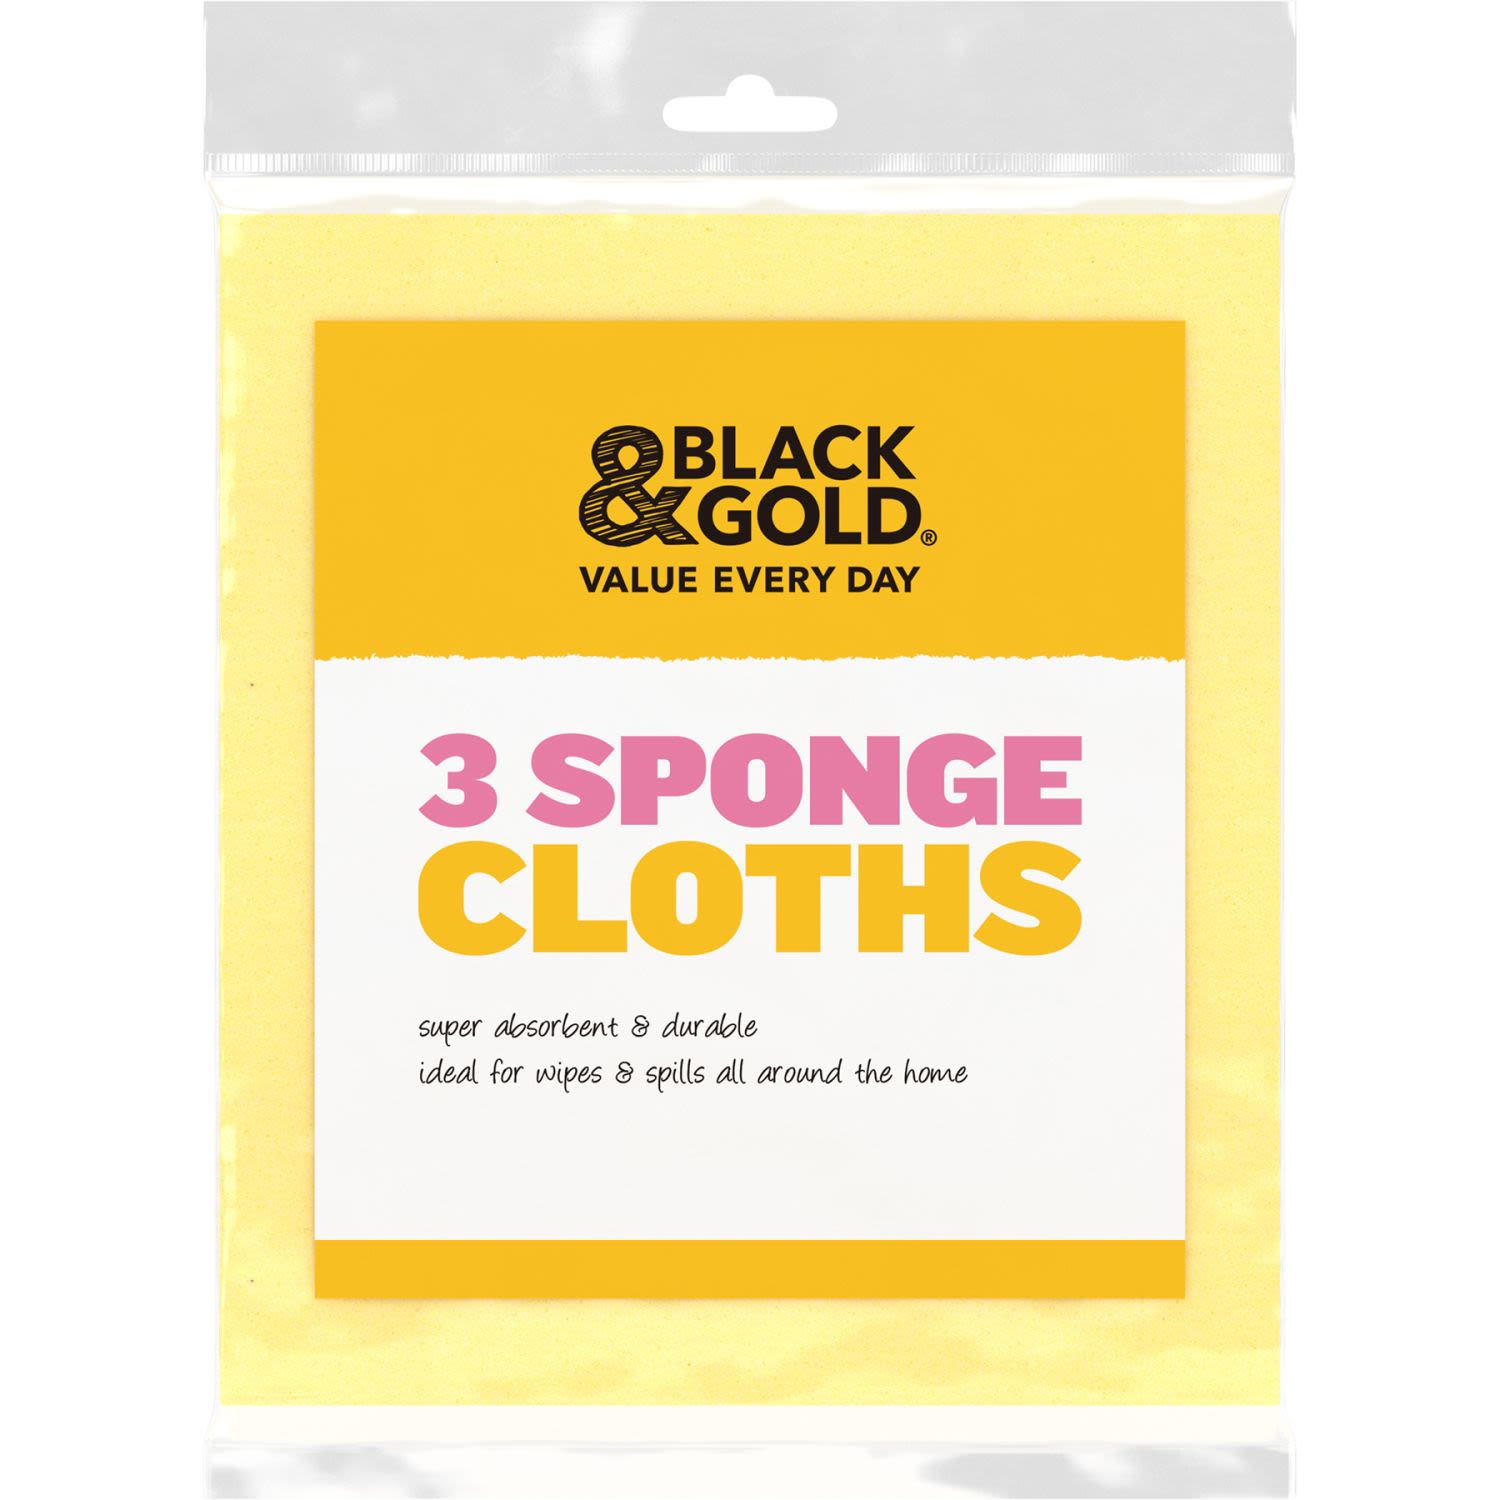 Black & Gold Sponge Cloths, 3 Each